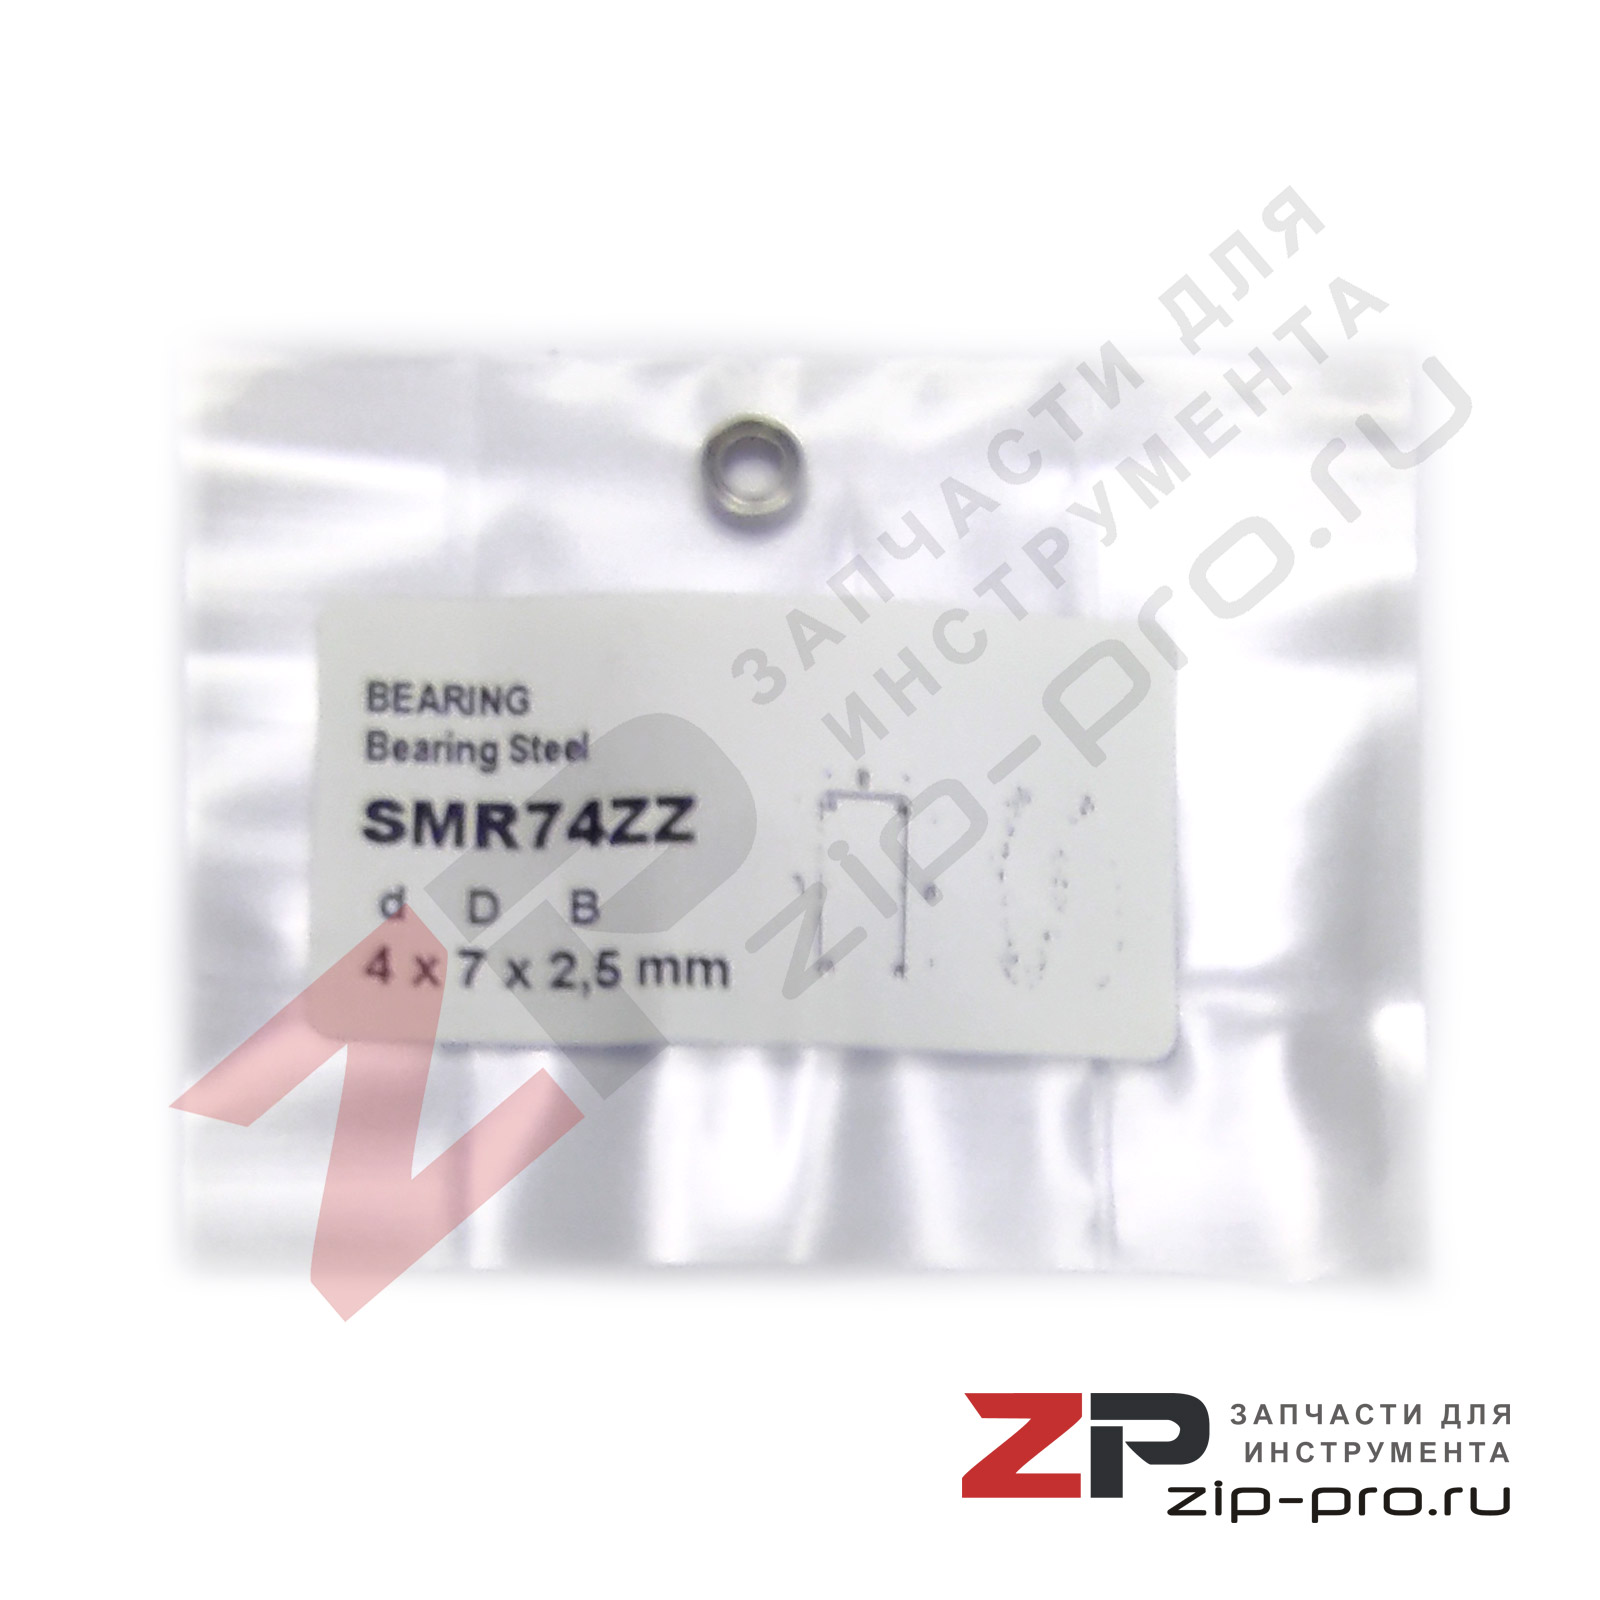 Подшипник SMR74ZZ 4х7х2,5mm фото 4